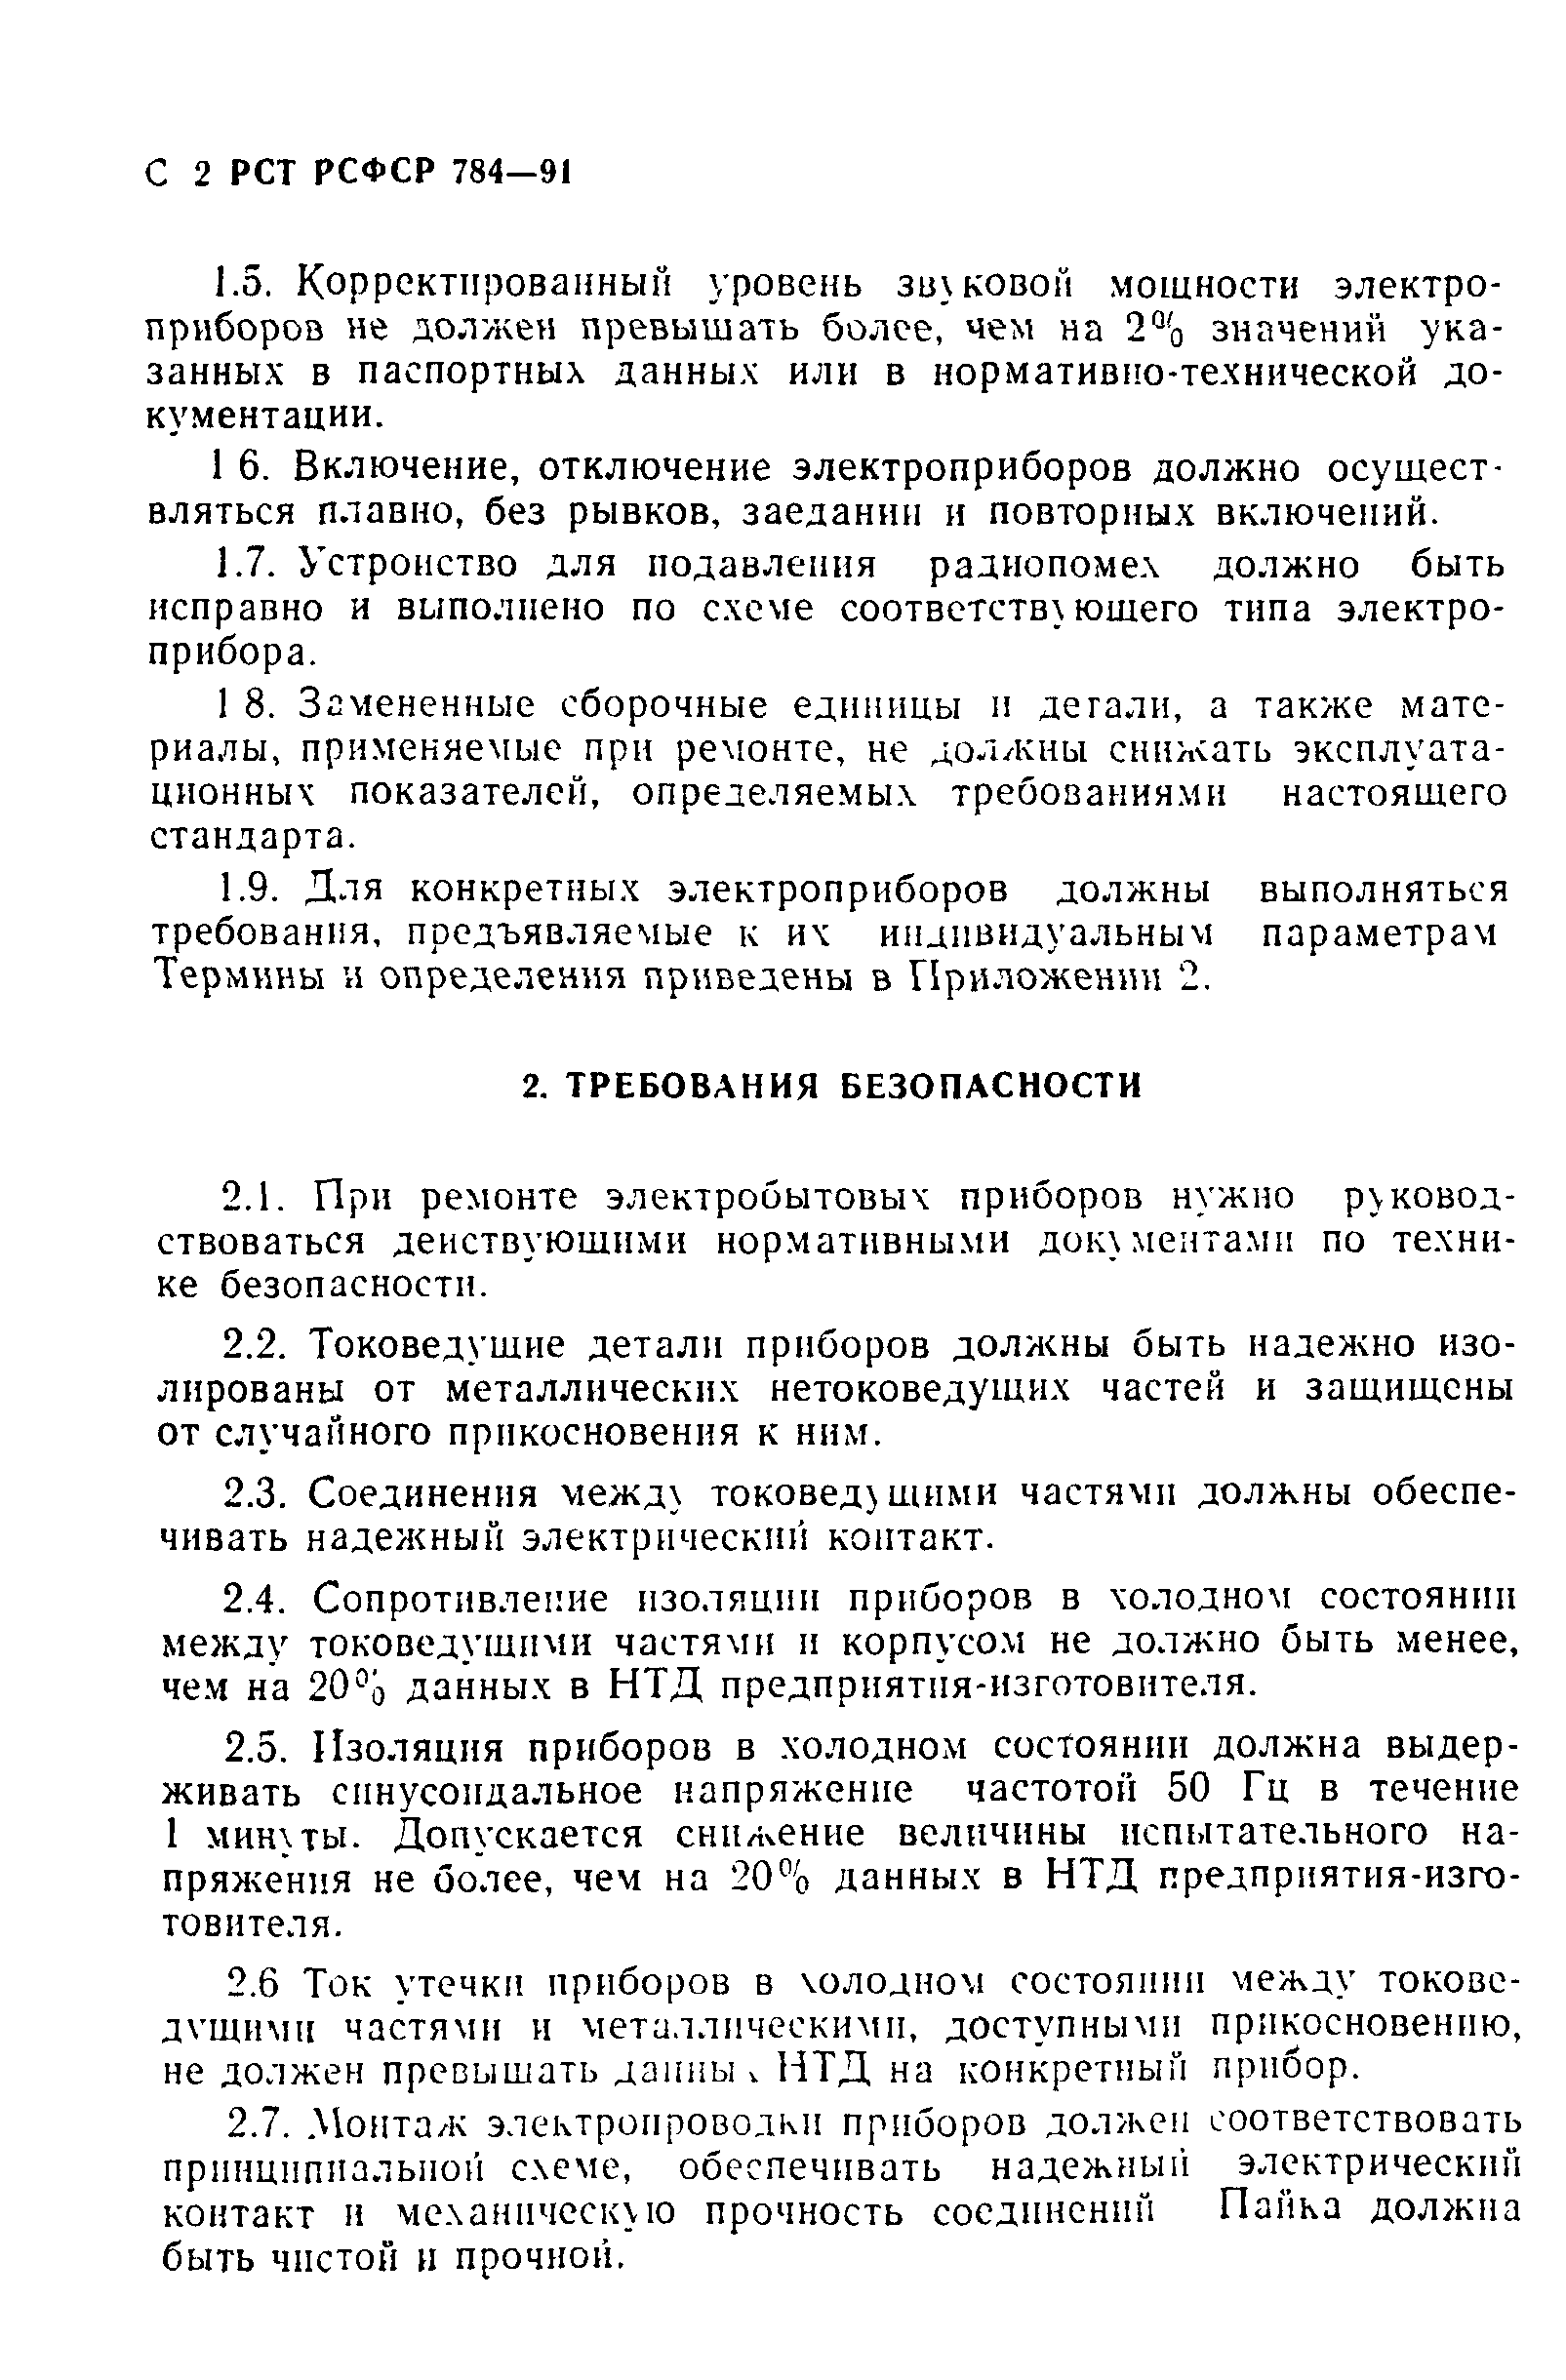 РСТ РСФСР 784-91